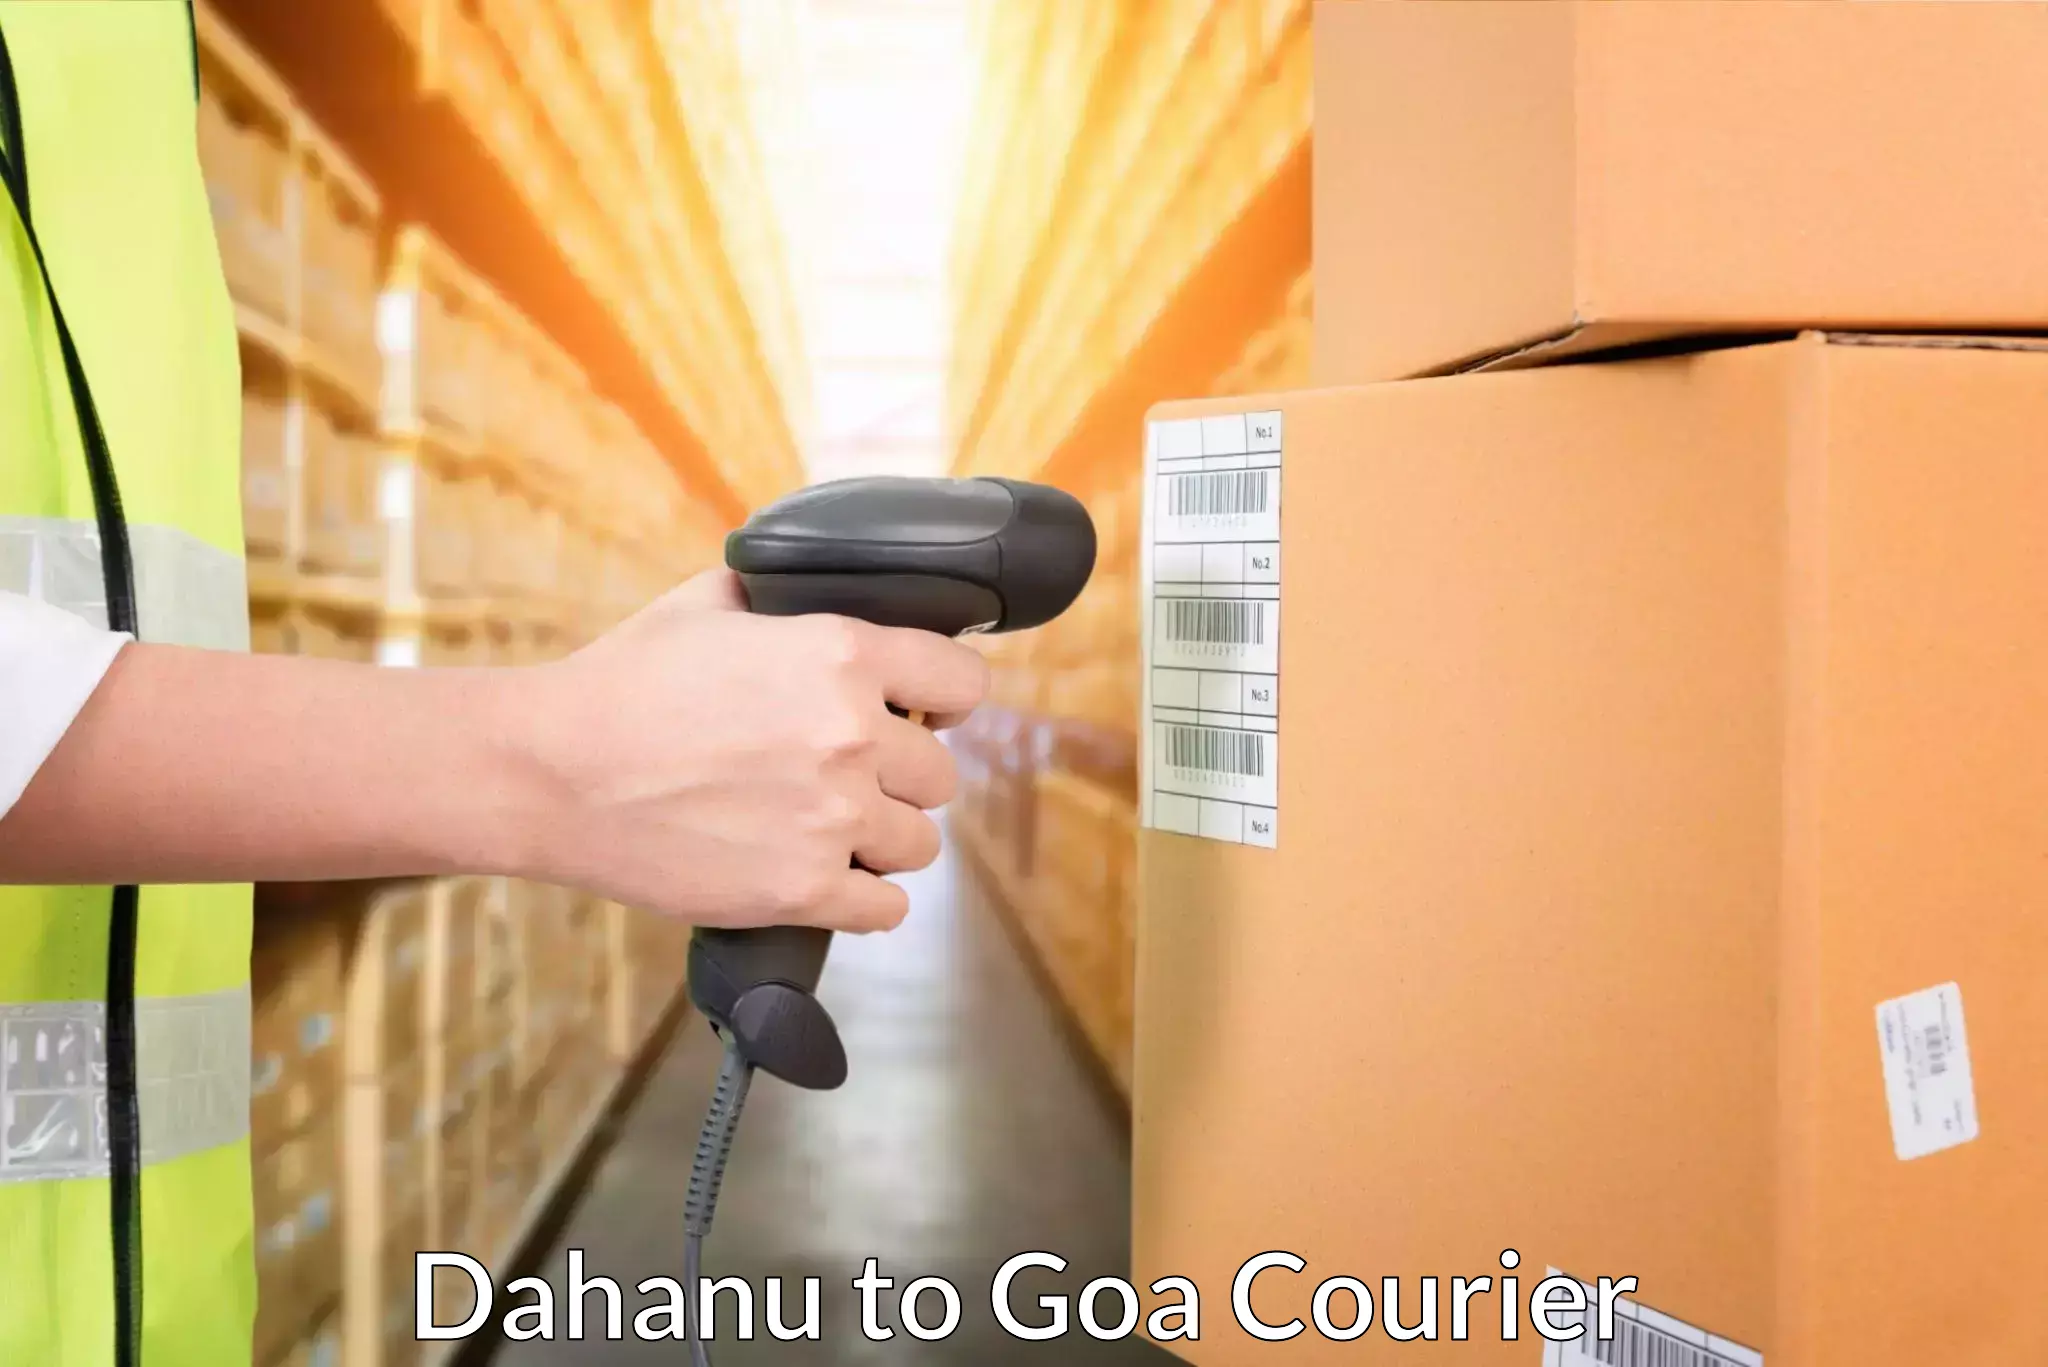 Door-to-door freight service Dahanu to Bardez